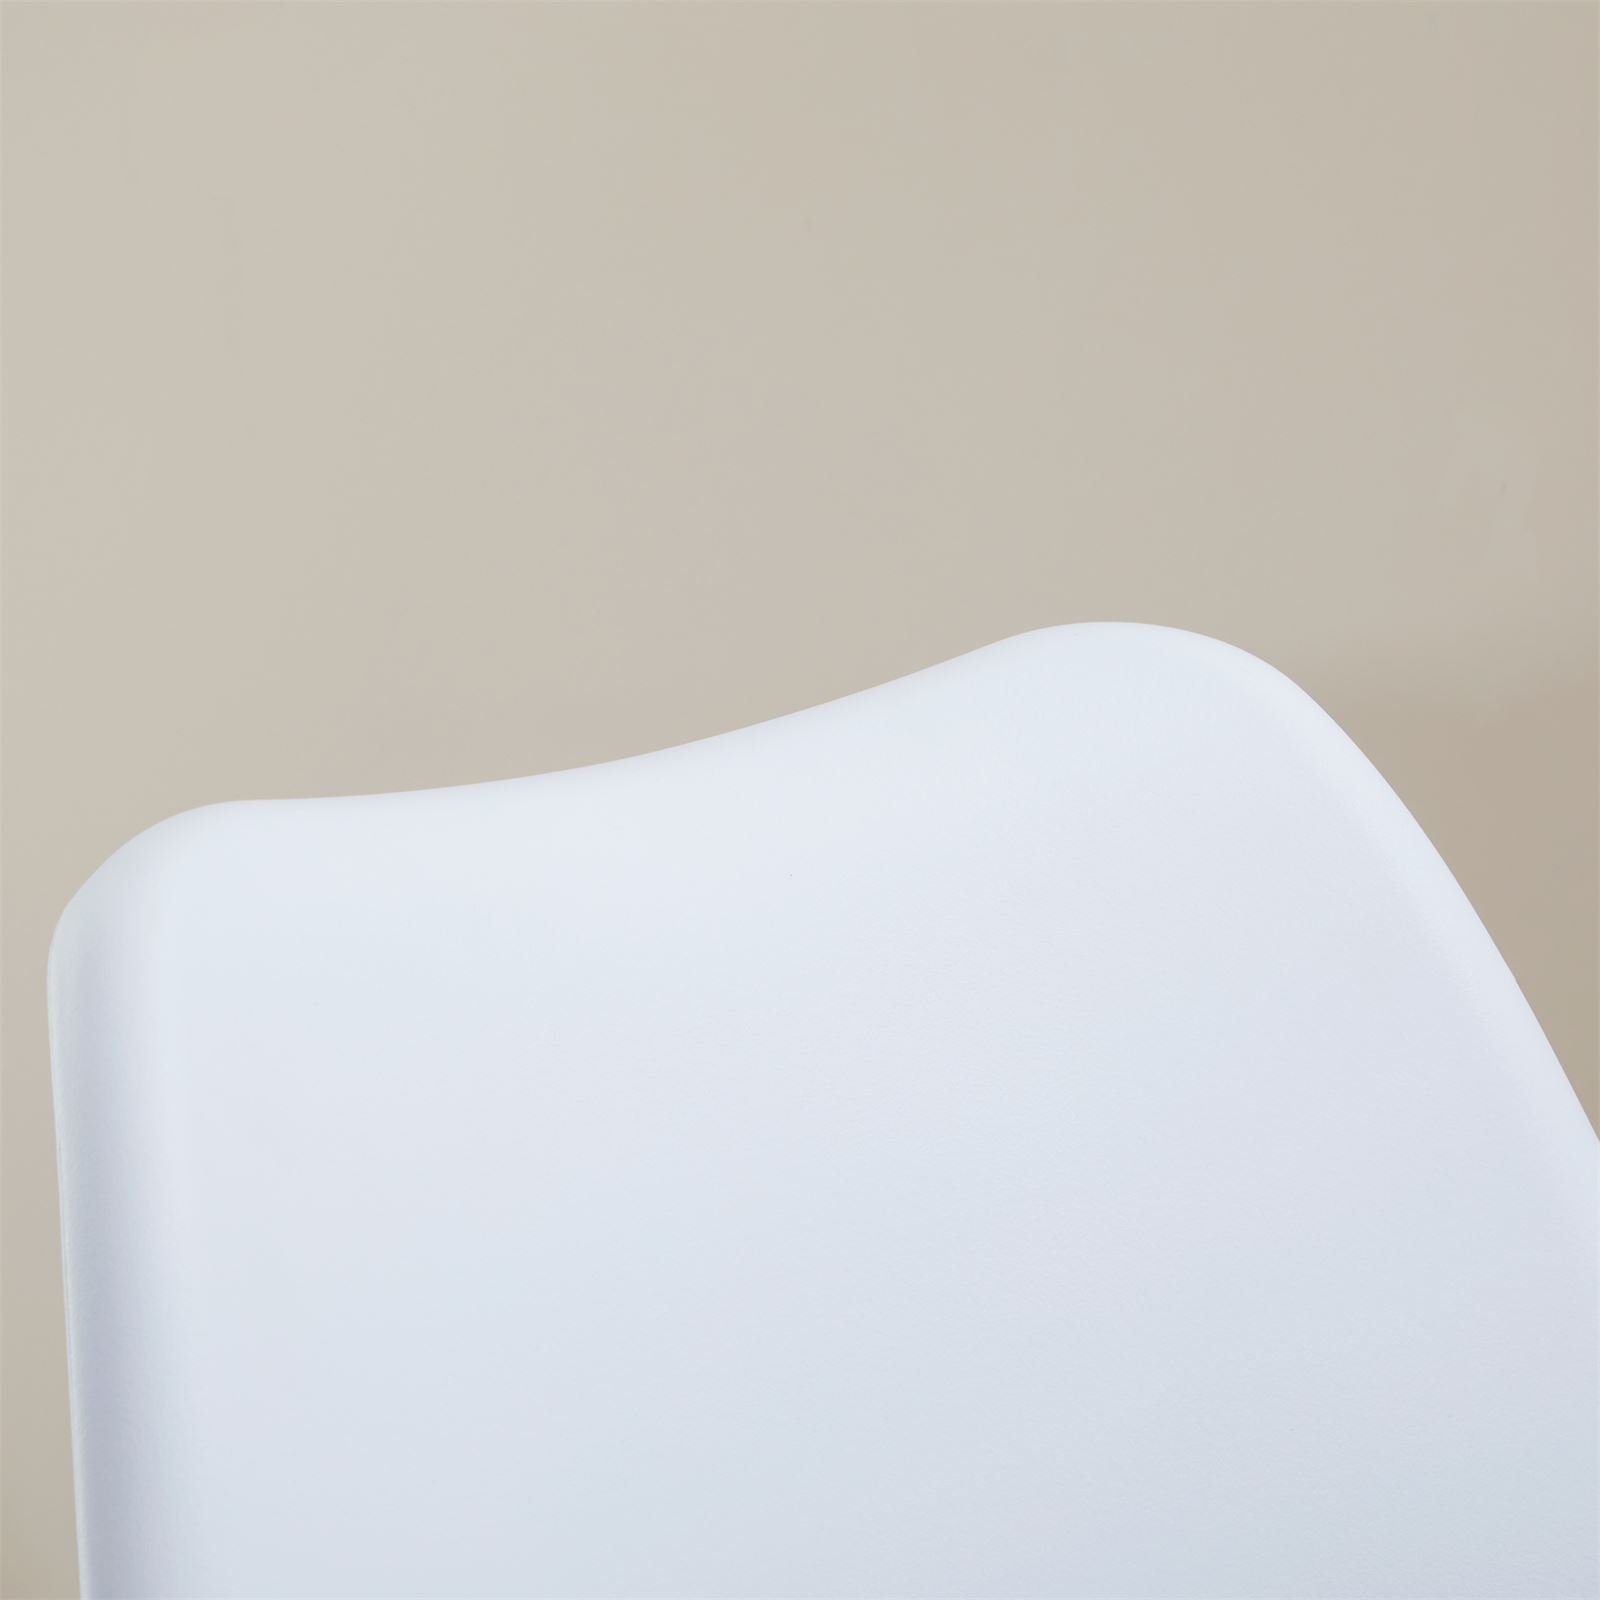 nordischer Sitzkissen Kunstleder St), Esszimmerstuhl (4 ROUEN Sti Kunststoff schwarz/weiß IDIMEX Esszimmerstuhl mit aus